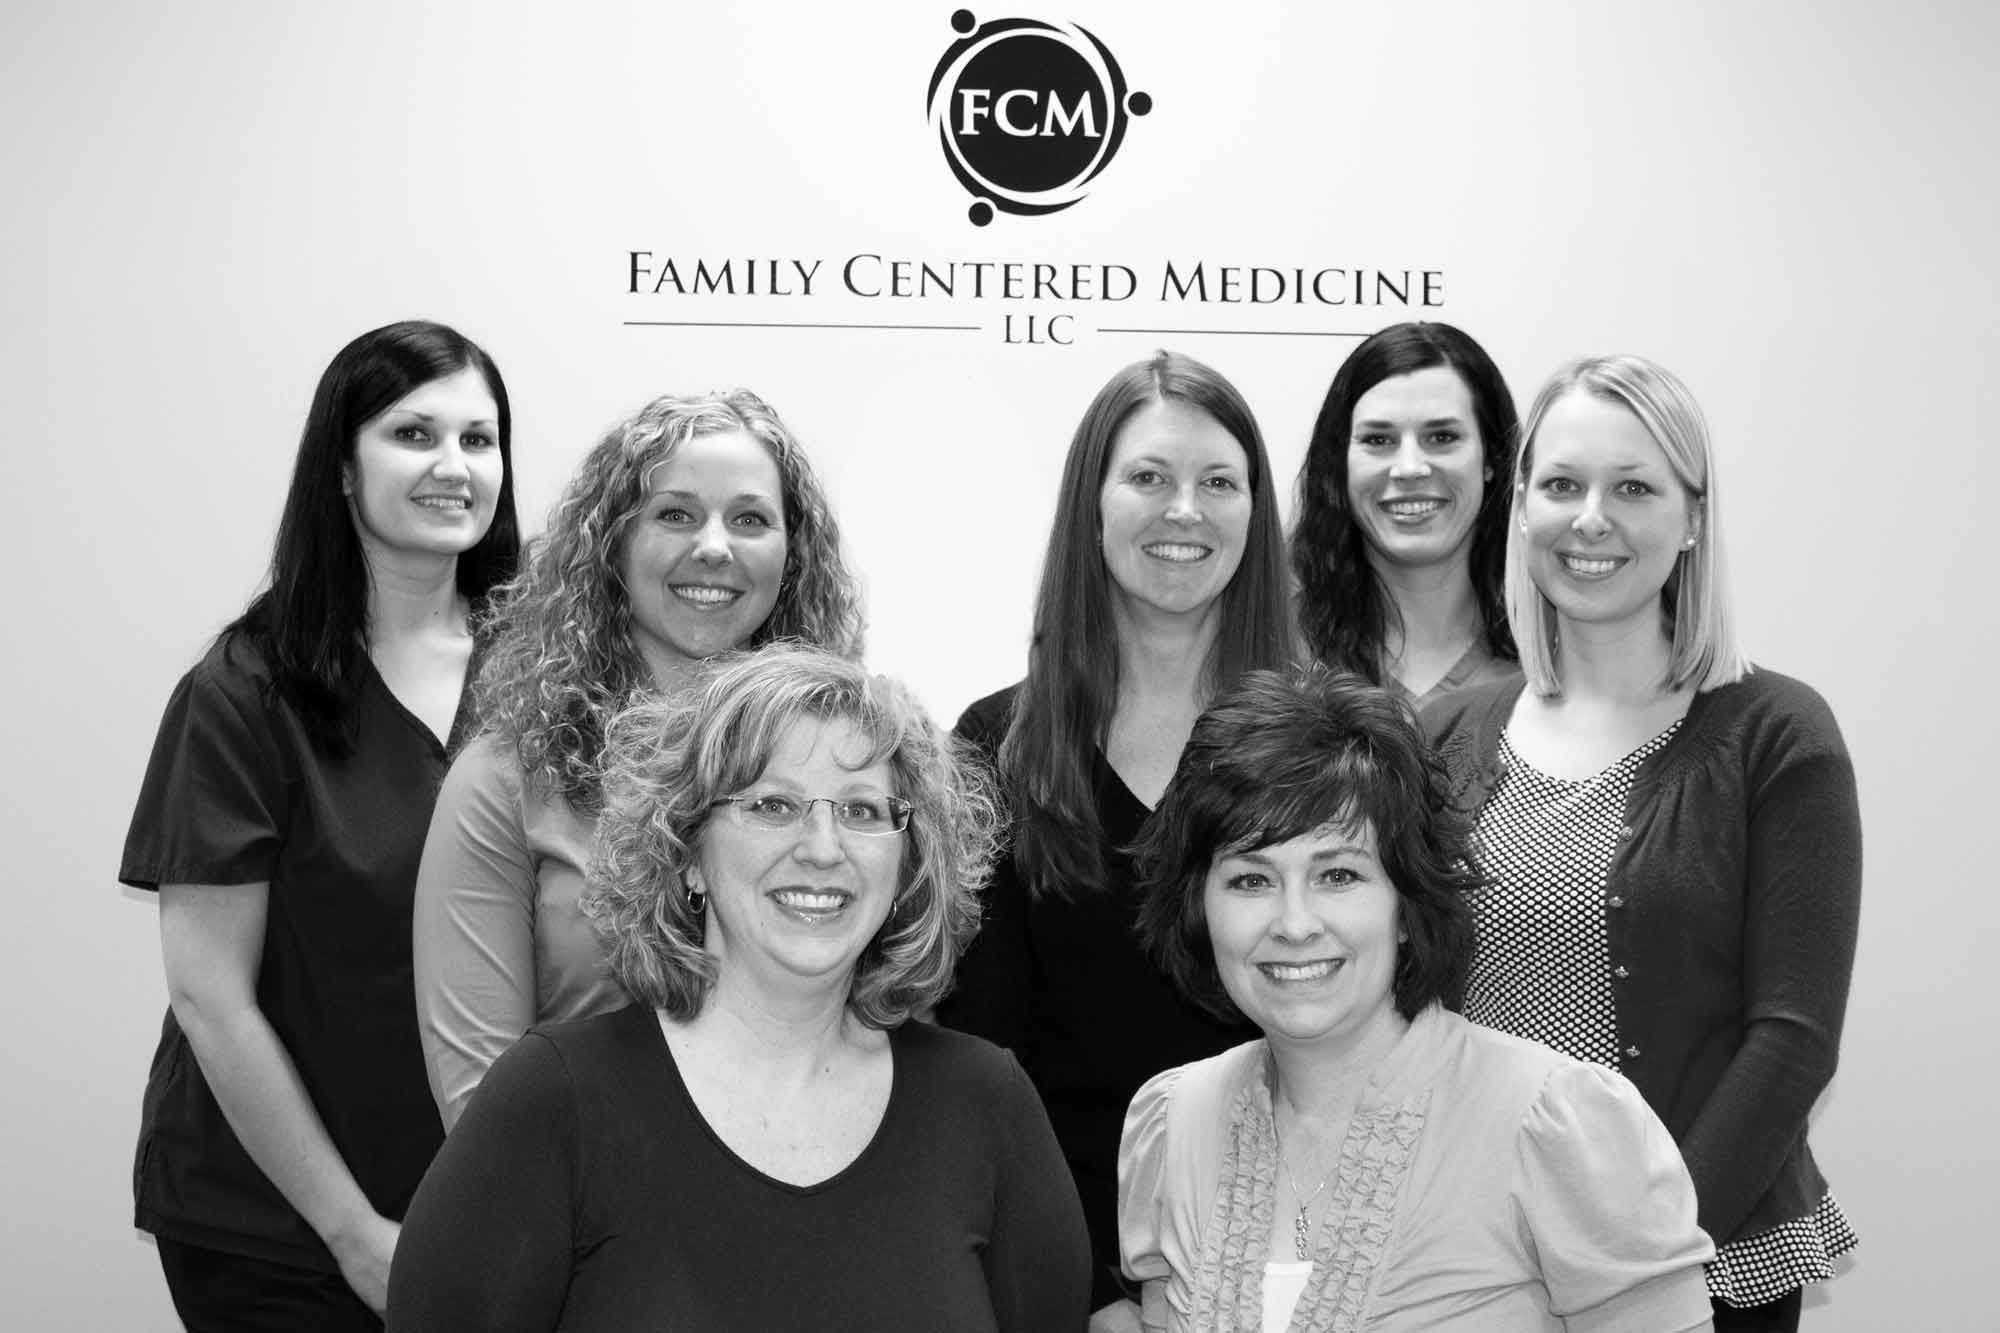 Family Centered Medicine, LLC